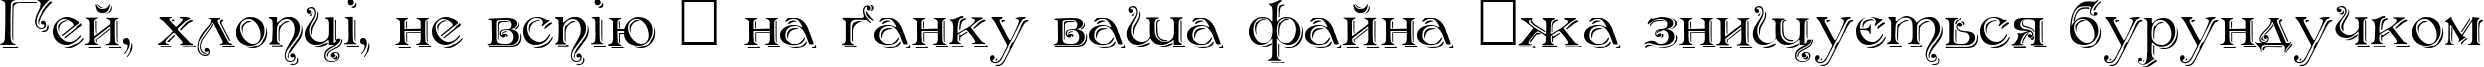 Пример написания шрифтом Antikvar Shadow Roman текста на украинском